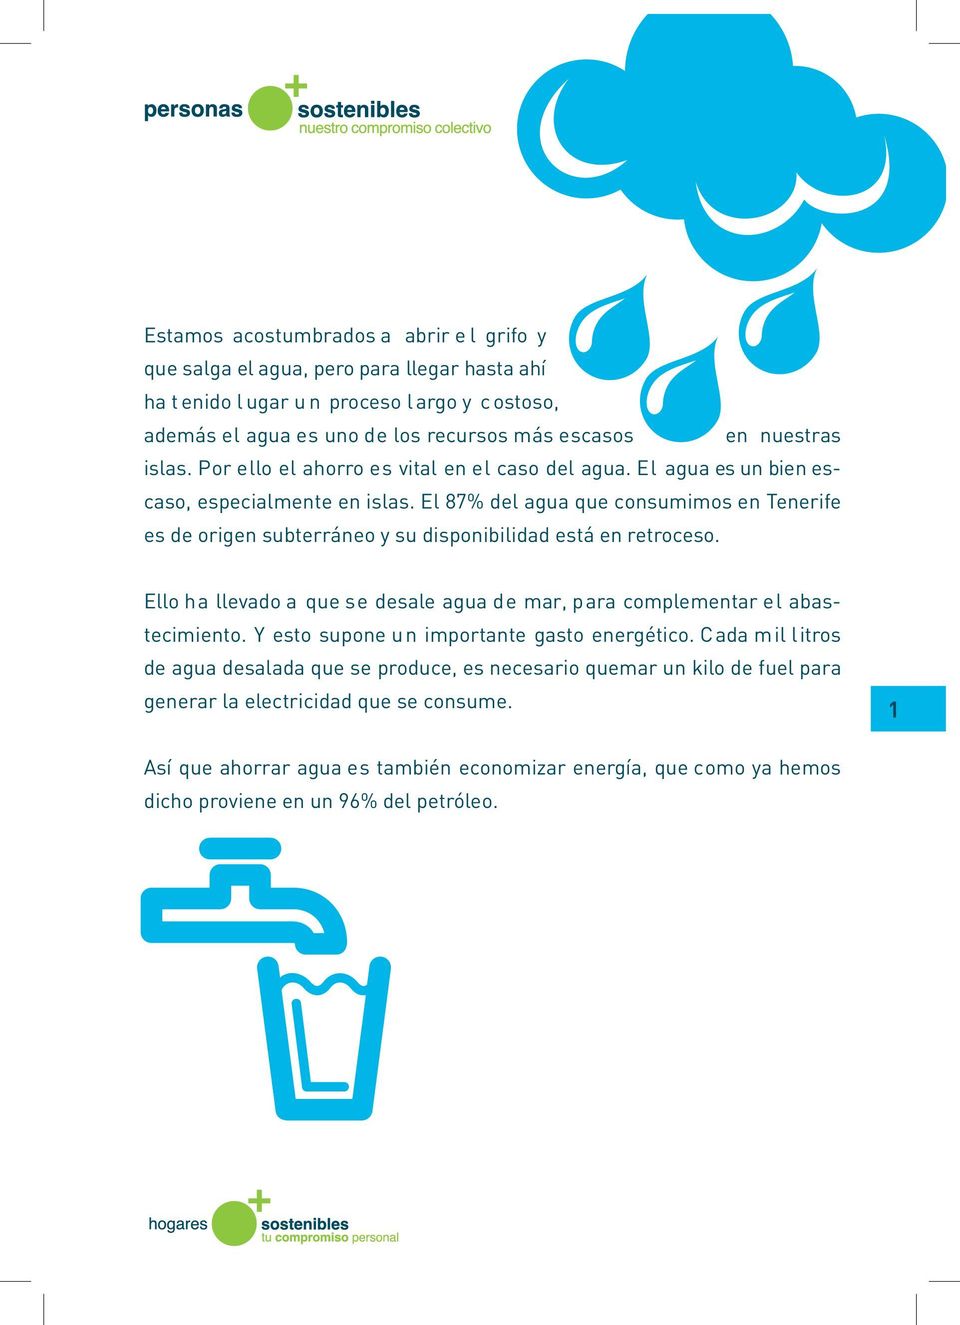 El 87% del agua que consumimos en Tenerife es de origen subterráneo y su disponibilidad está en retroceso. Ello ha llevado a que se desale agua de mar, para complementar el abastecimiento.